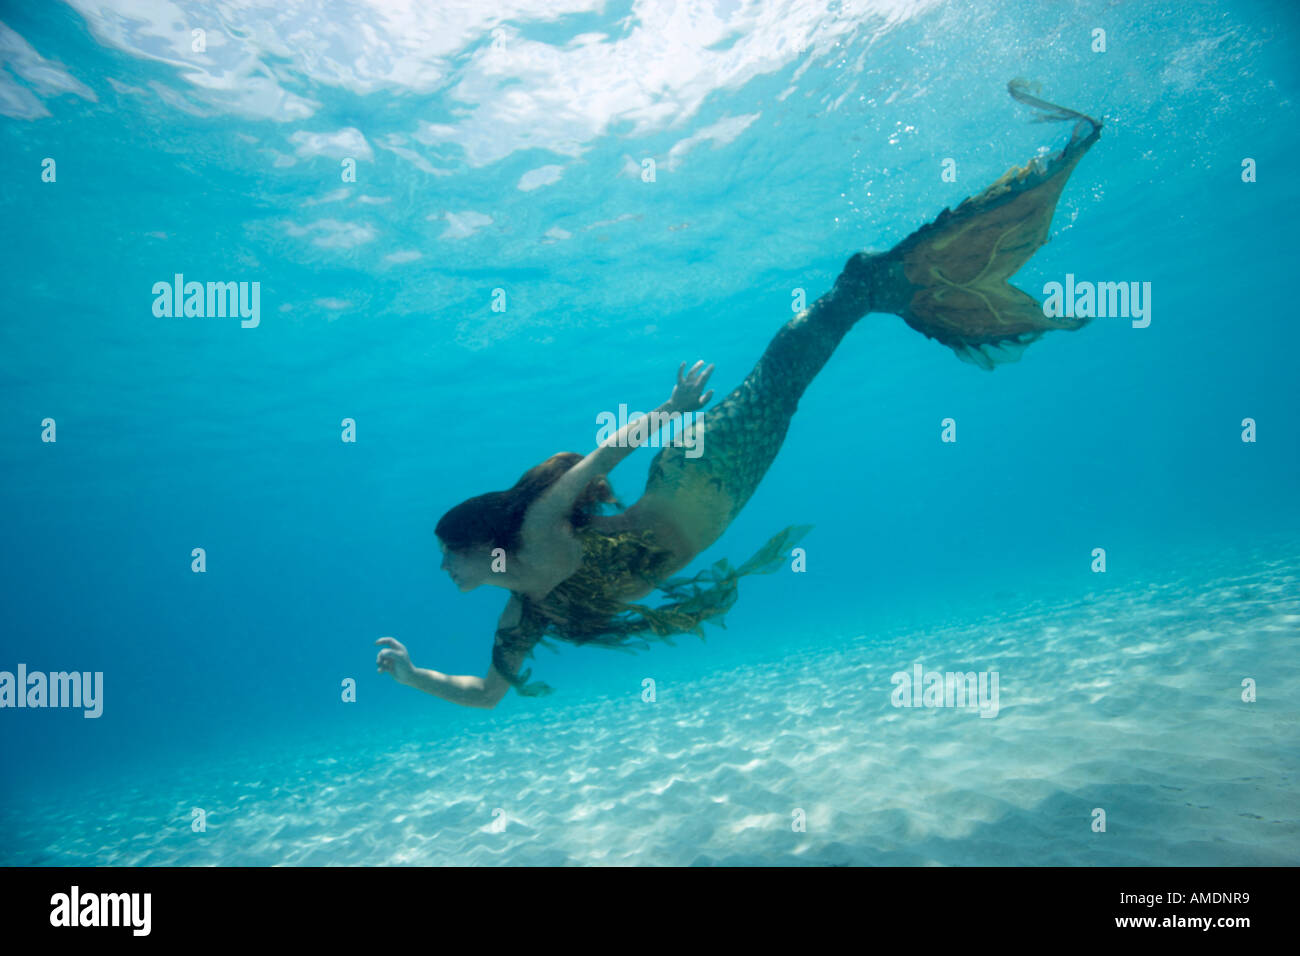 Sous-marine de sirène dans l'eau peu profonde Playa Palencar côté ouest Cozumel mexique Banque D'Images